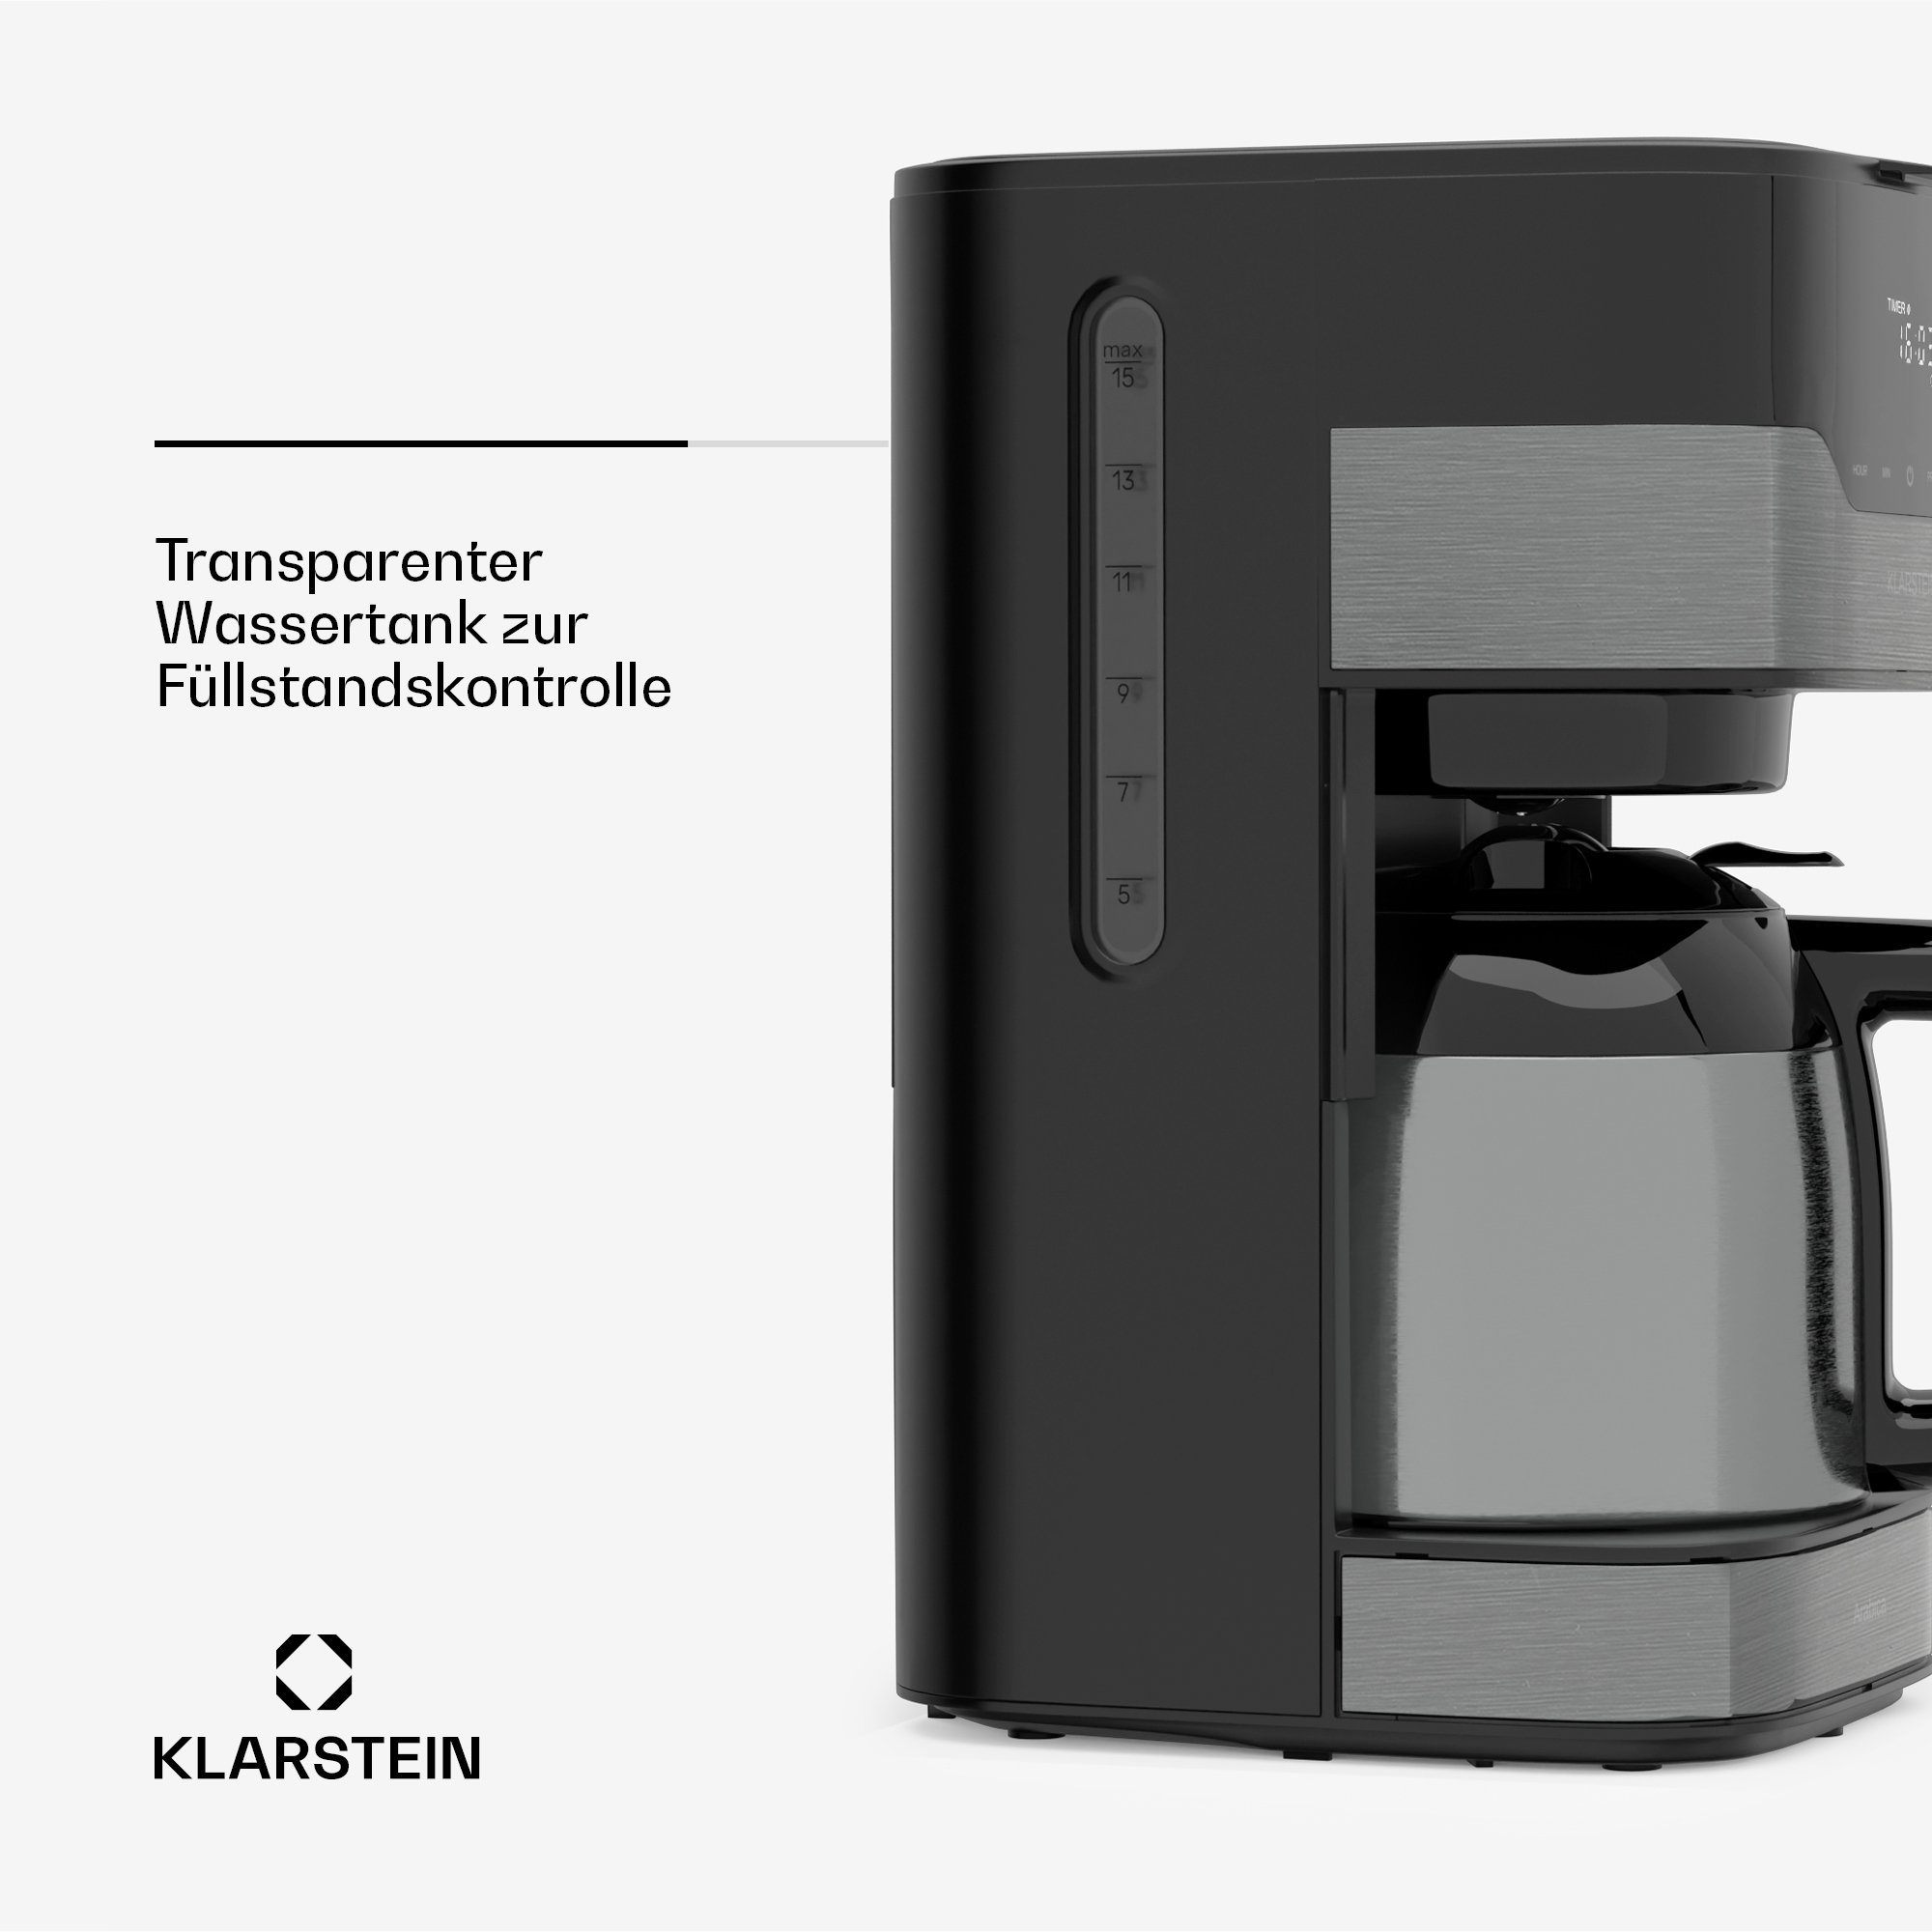 Tassen Filterkaffeemaschine mit thermoskanne LCD Touch Arabica, 1,2L 12 Timer Kaffeekanne, Klarstein 1.2l